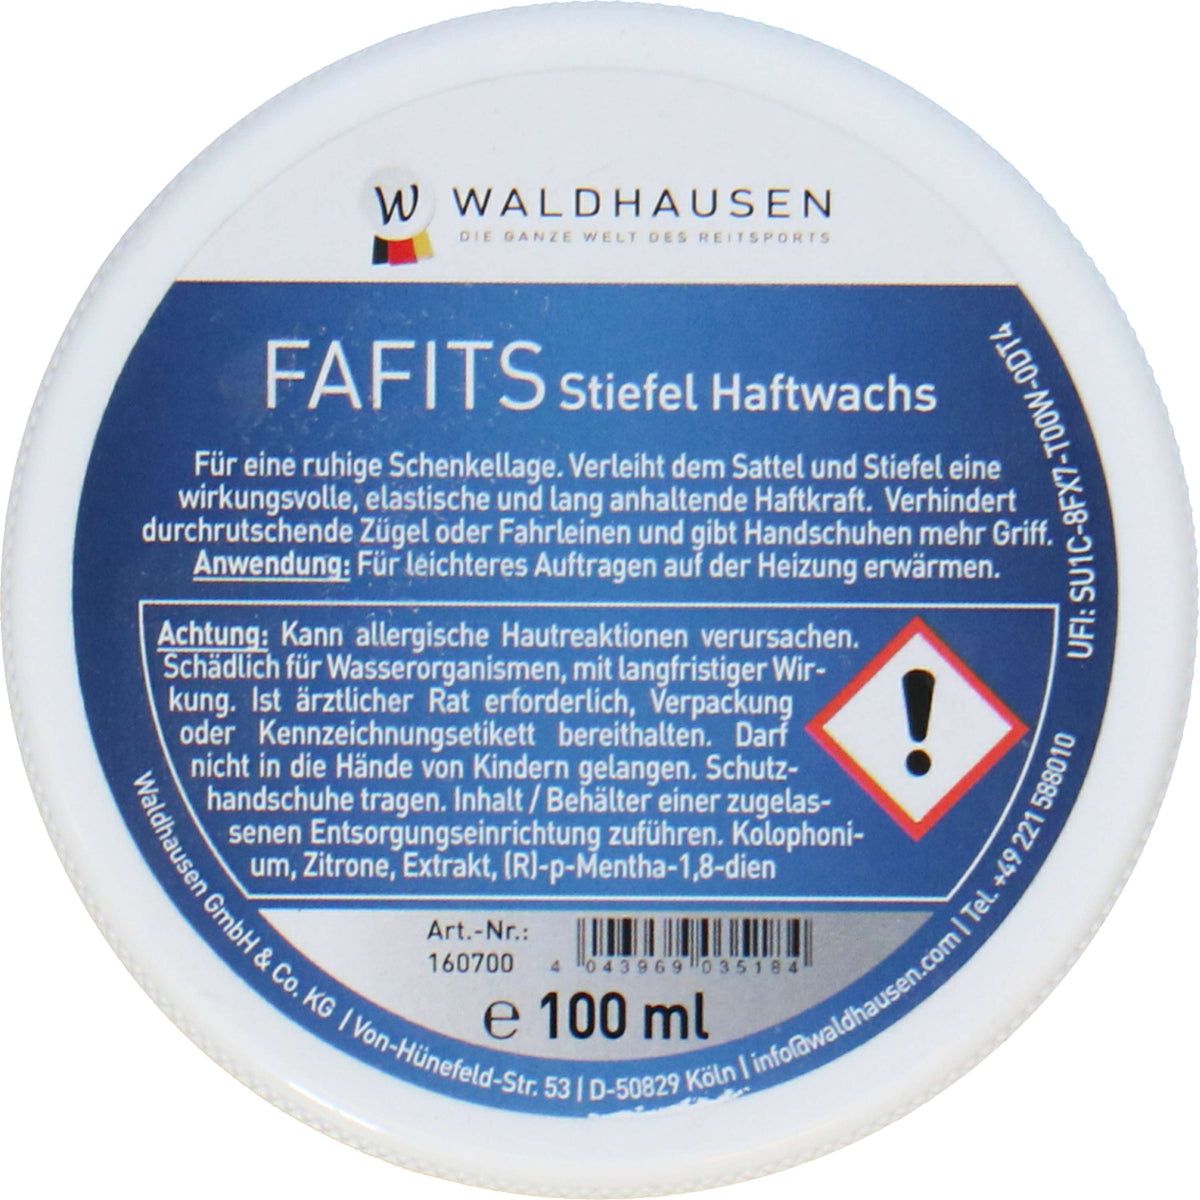 Waldhausen Haftwachs Fafits